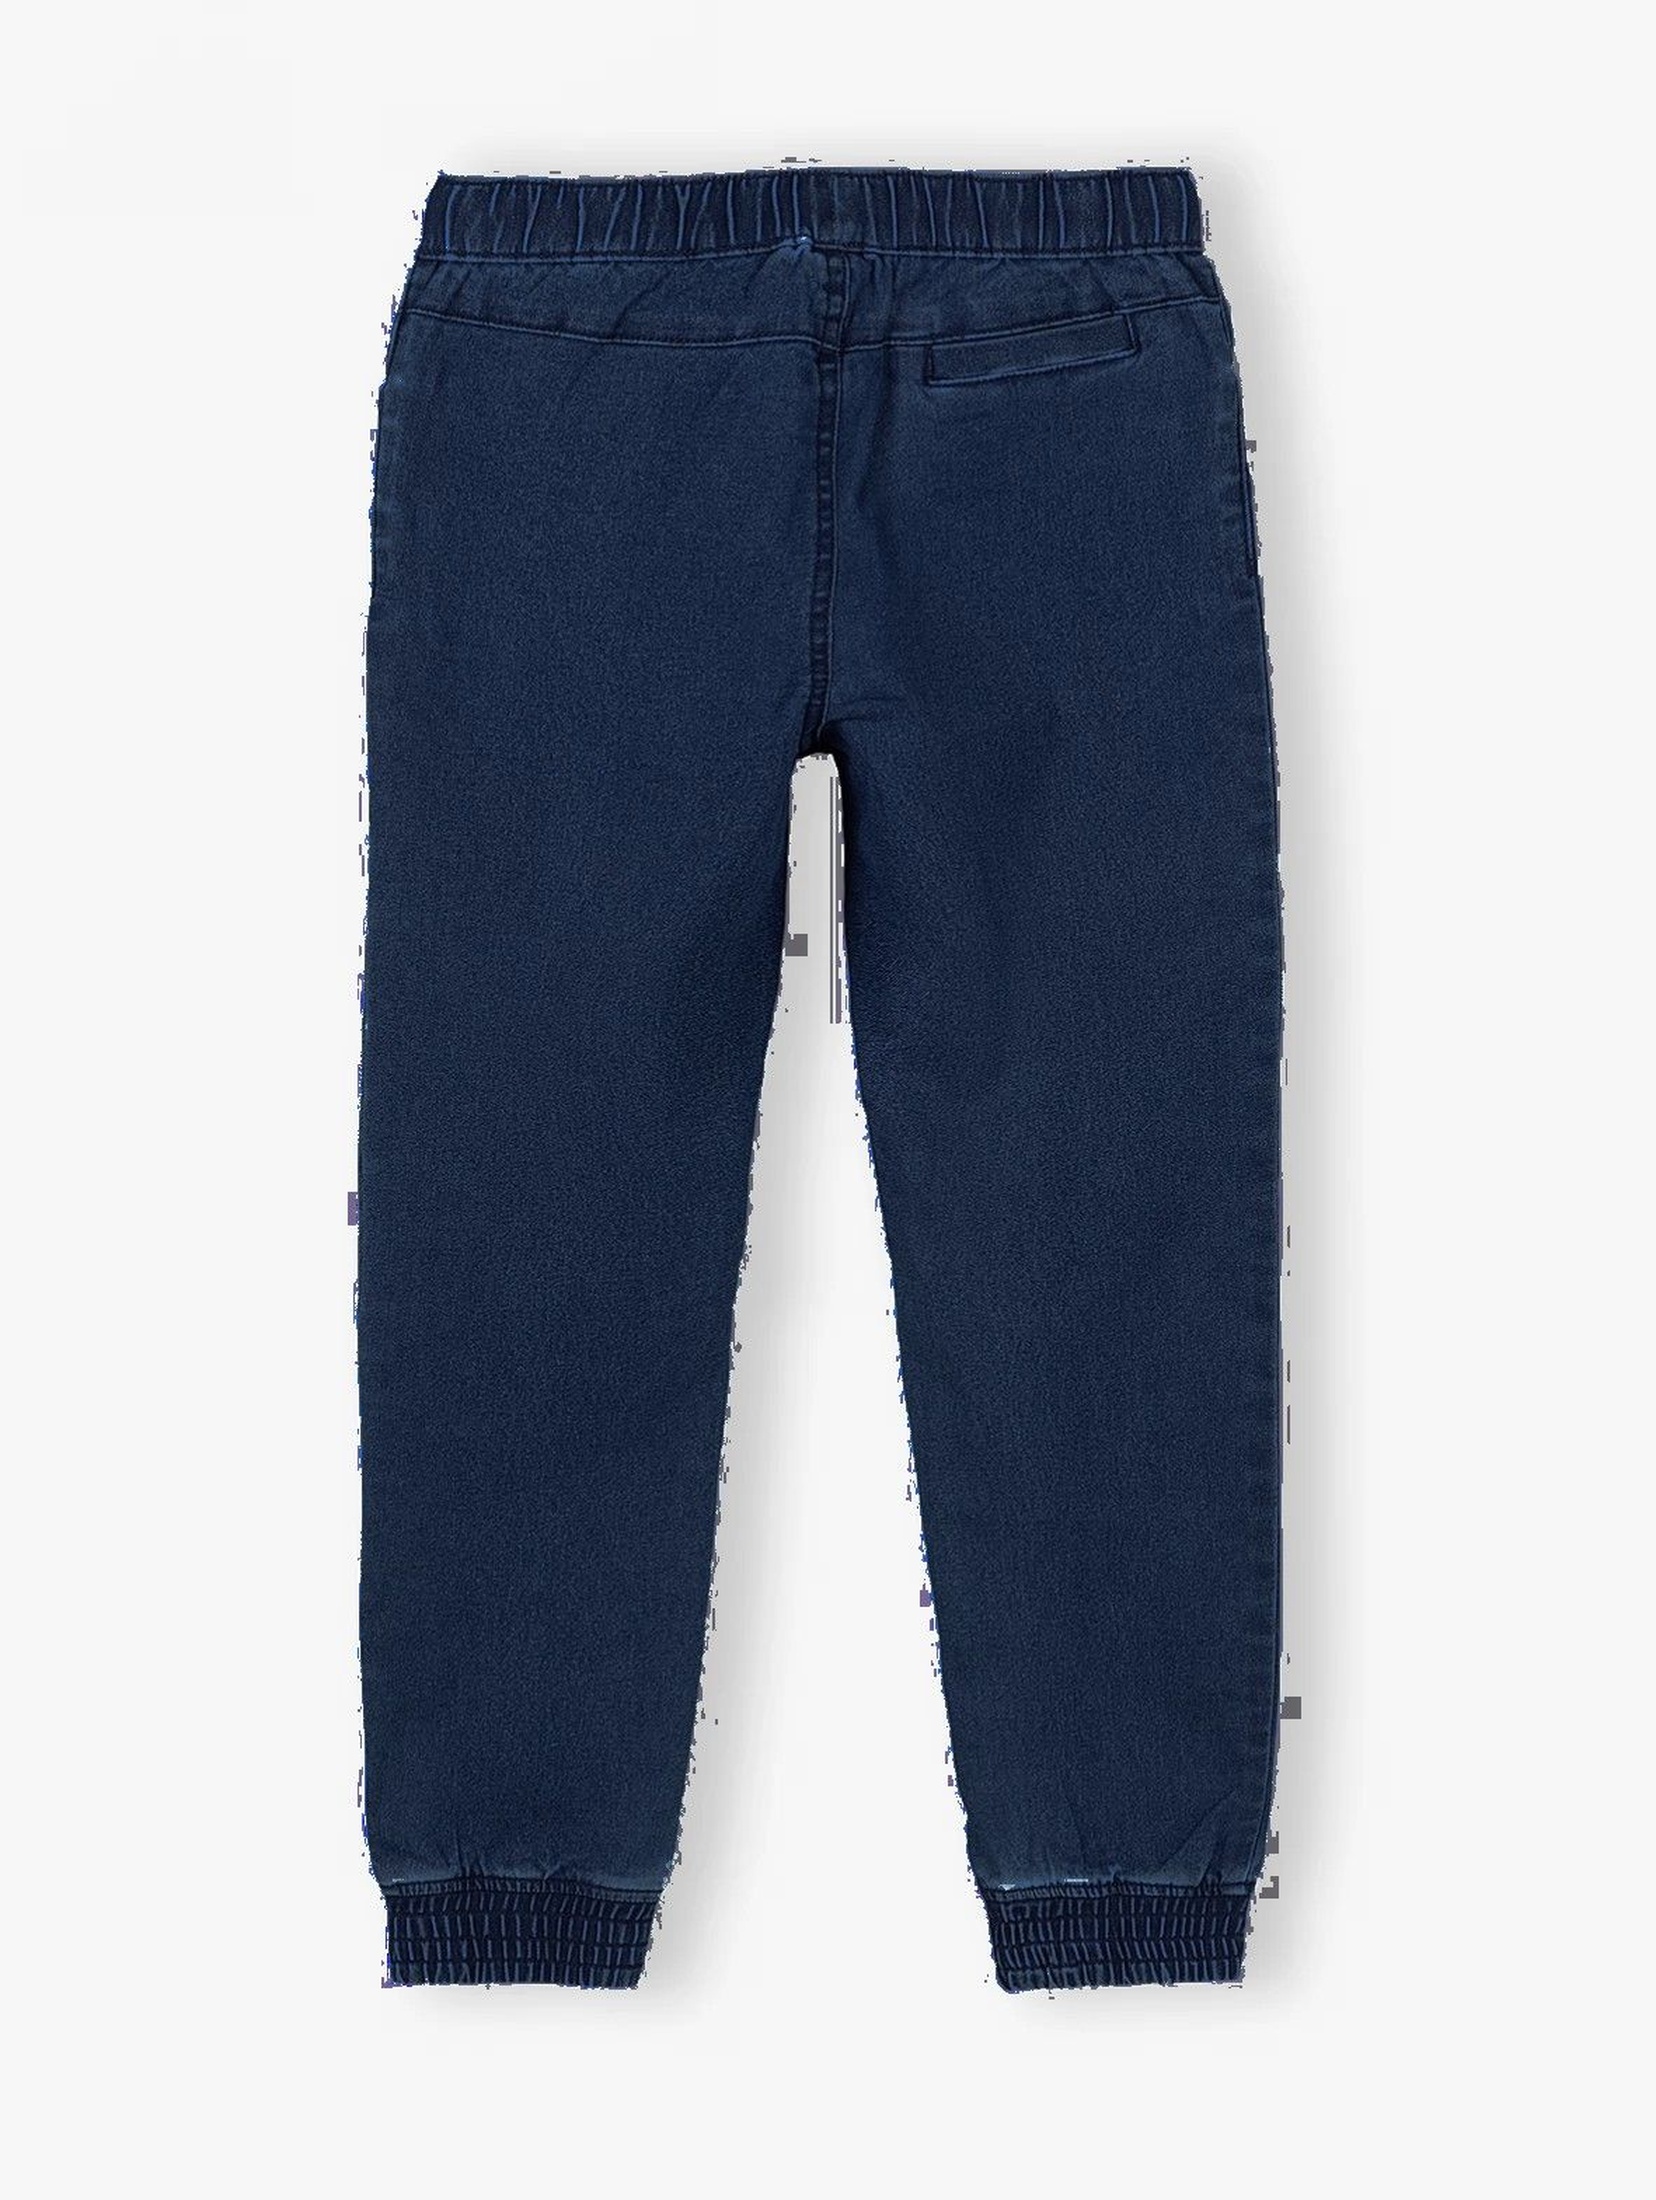 Spodnie chłopięce jeansowe - granatowy